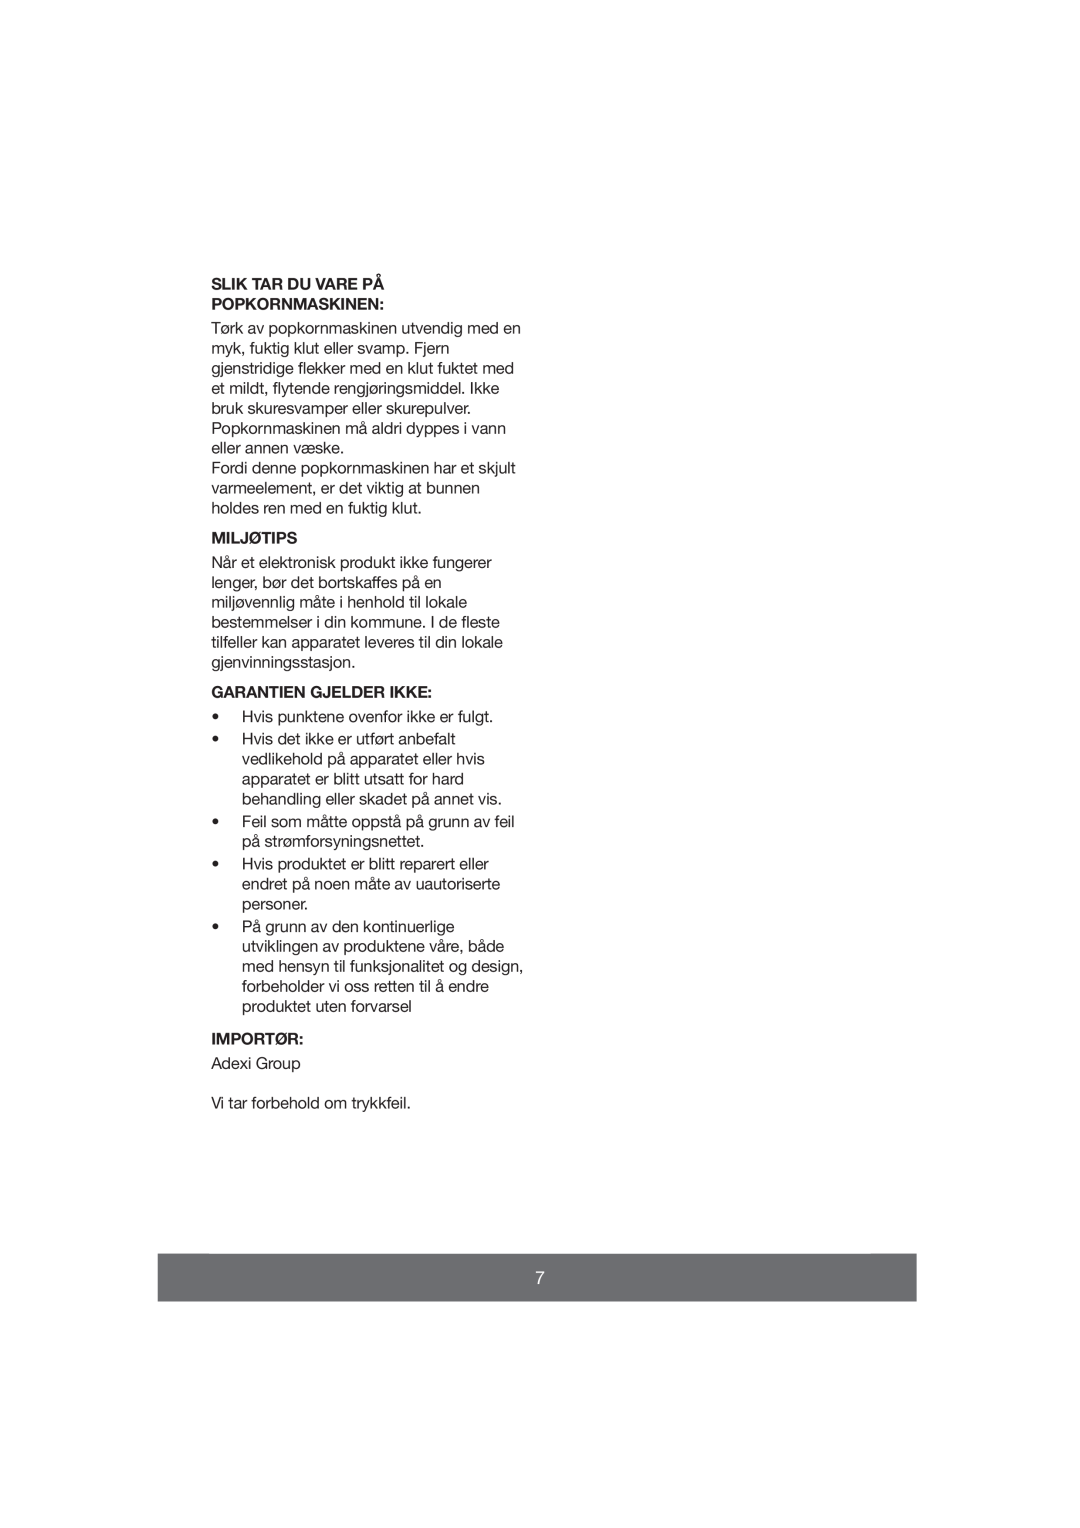 Melissa 643-038 manual Slik Tar Du Vare På Popkornmaskinen, Miljøtips, Garantien Gjelder Ikke, Importør 